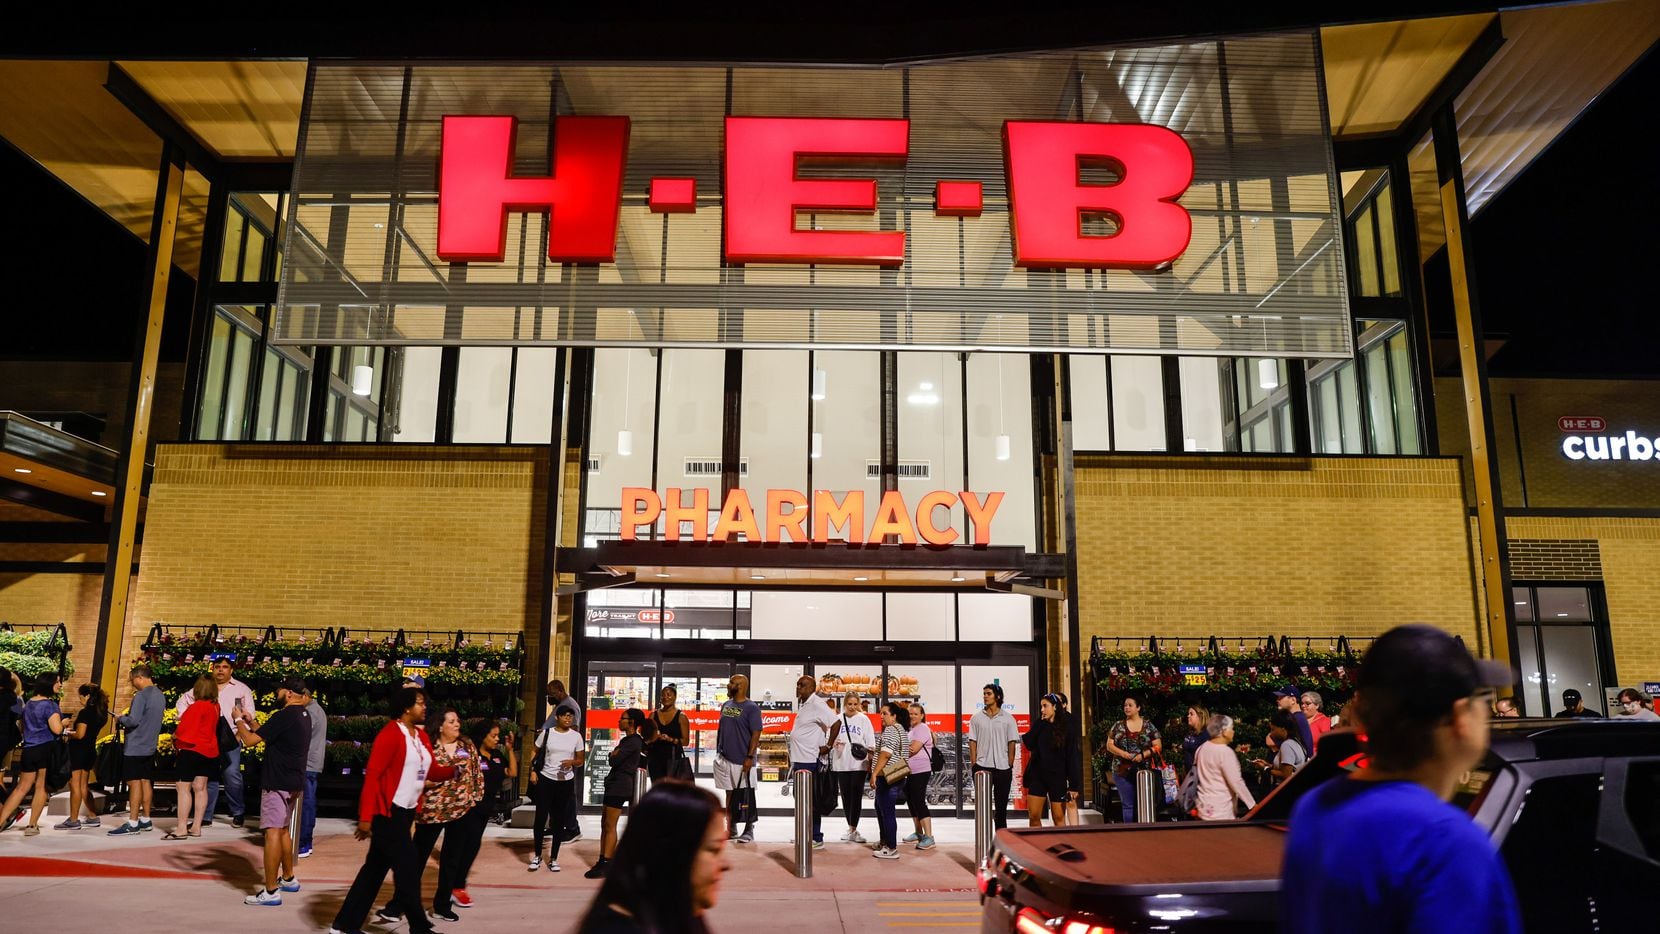 Las tiendas H-E-B generan grant tráfico de clientes ha negocios y centros comerciales aledaños.